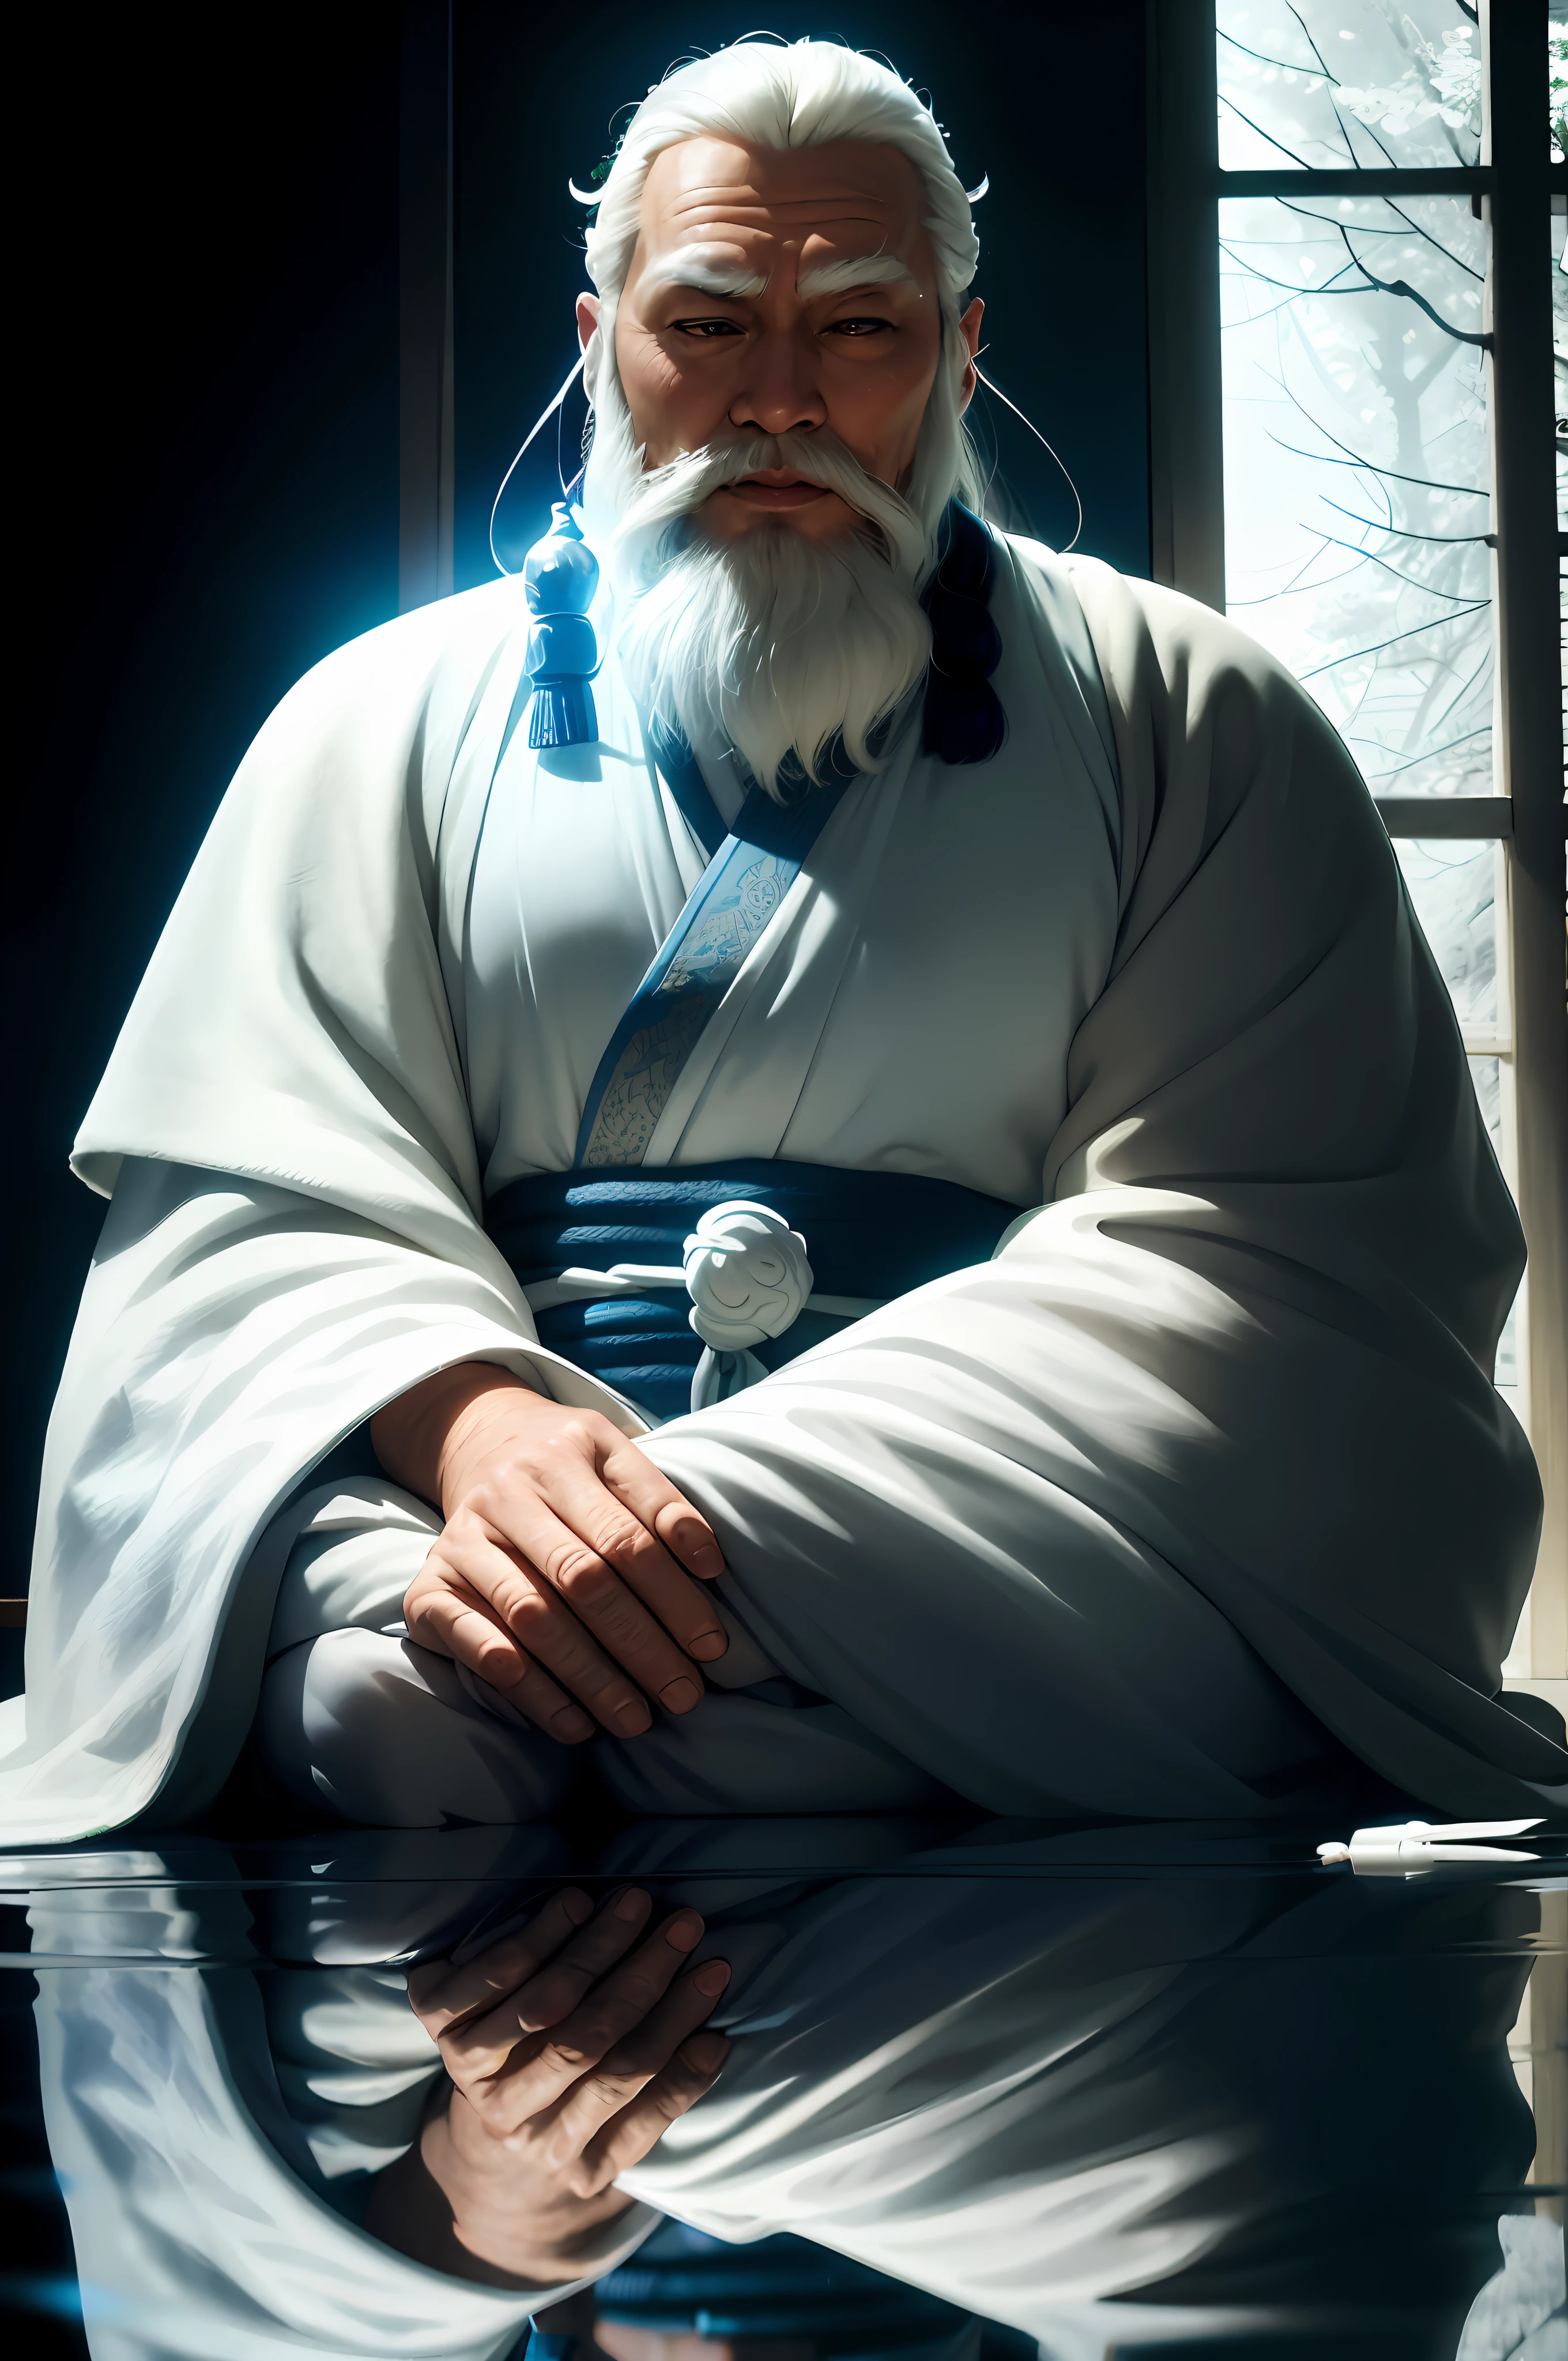 Арафед мужчина в белом халате сидит на столе с голубой лентой, даосский священник, даосский мастер, white даосист robes, портрет онмёдзи, древний японский монах, даосист, Вдохновлен Ху Цзаобином, старый мастер-джедай, Портрет самурая фото, стоическая поза, вдохновленный У Даоцзы, в длинном струящемся халате